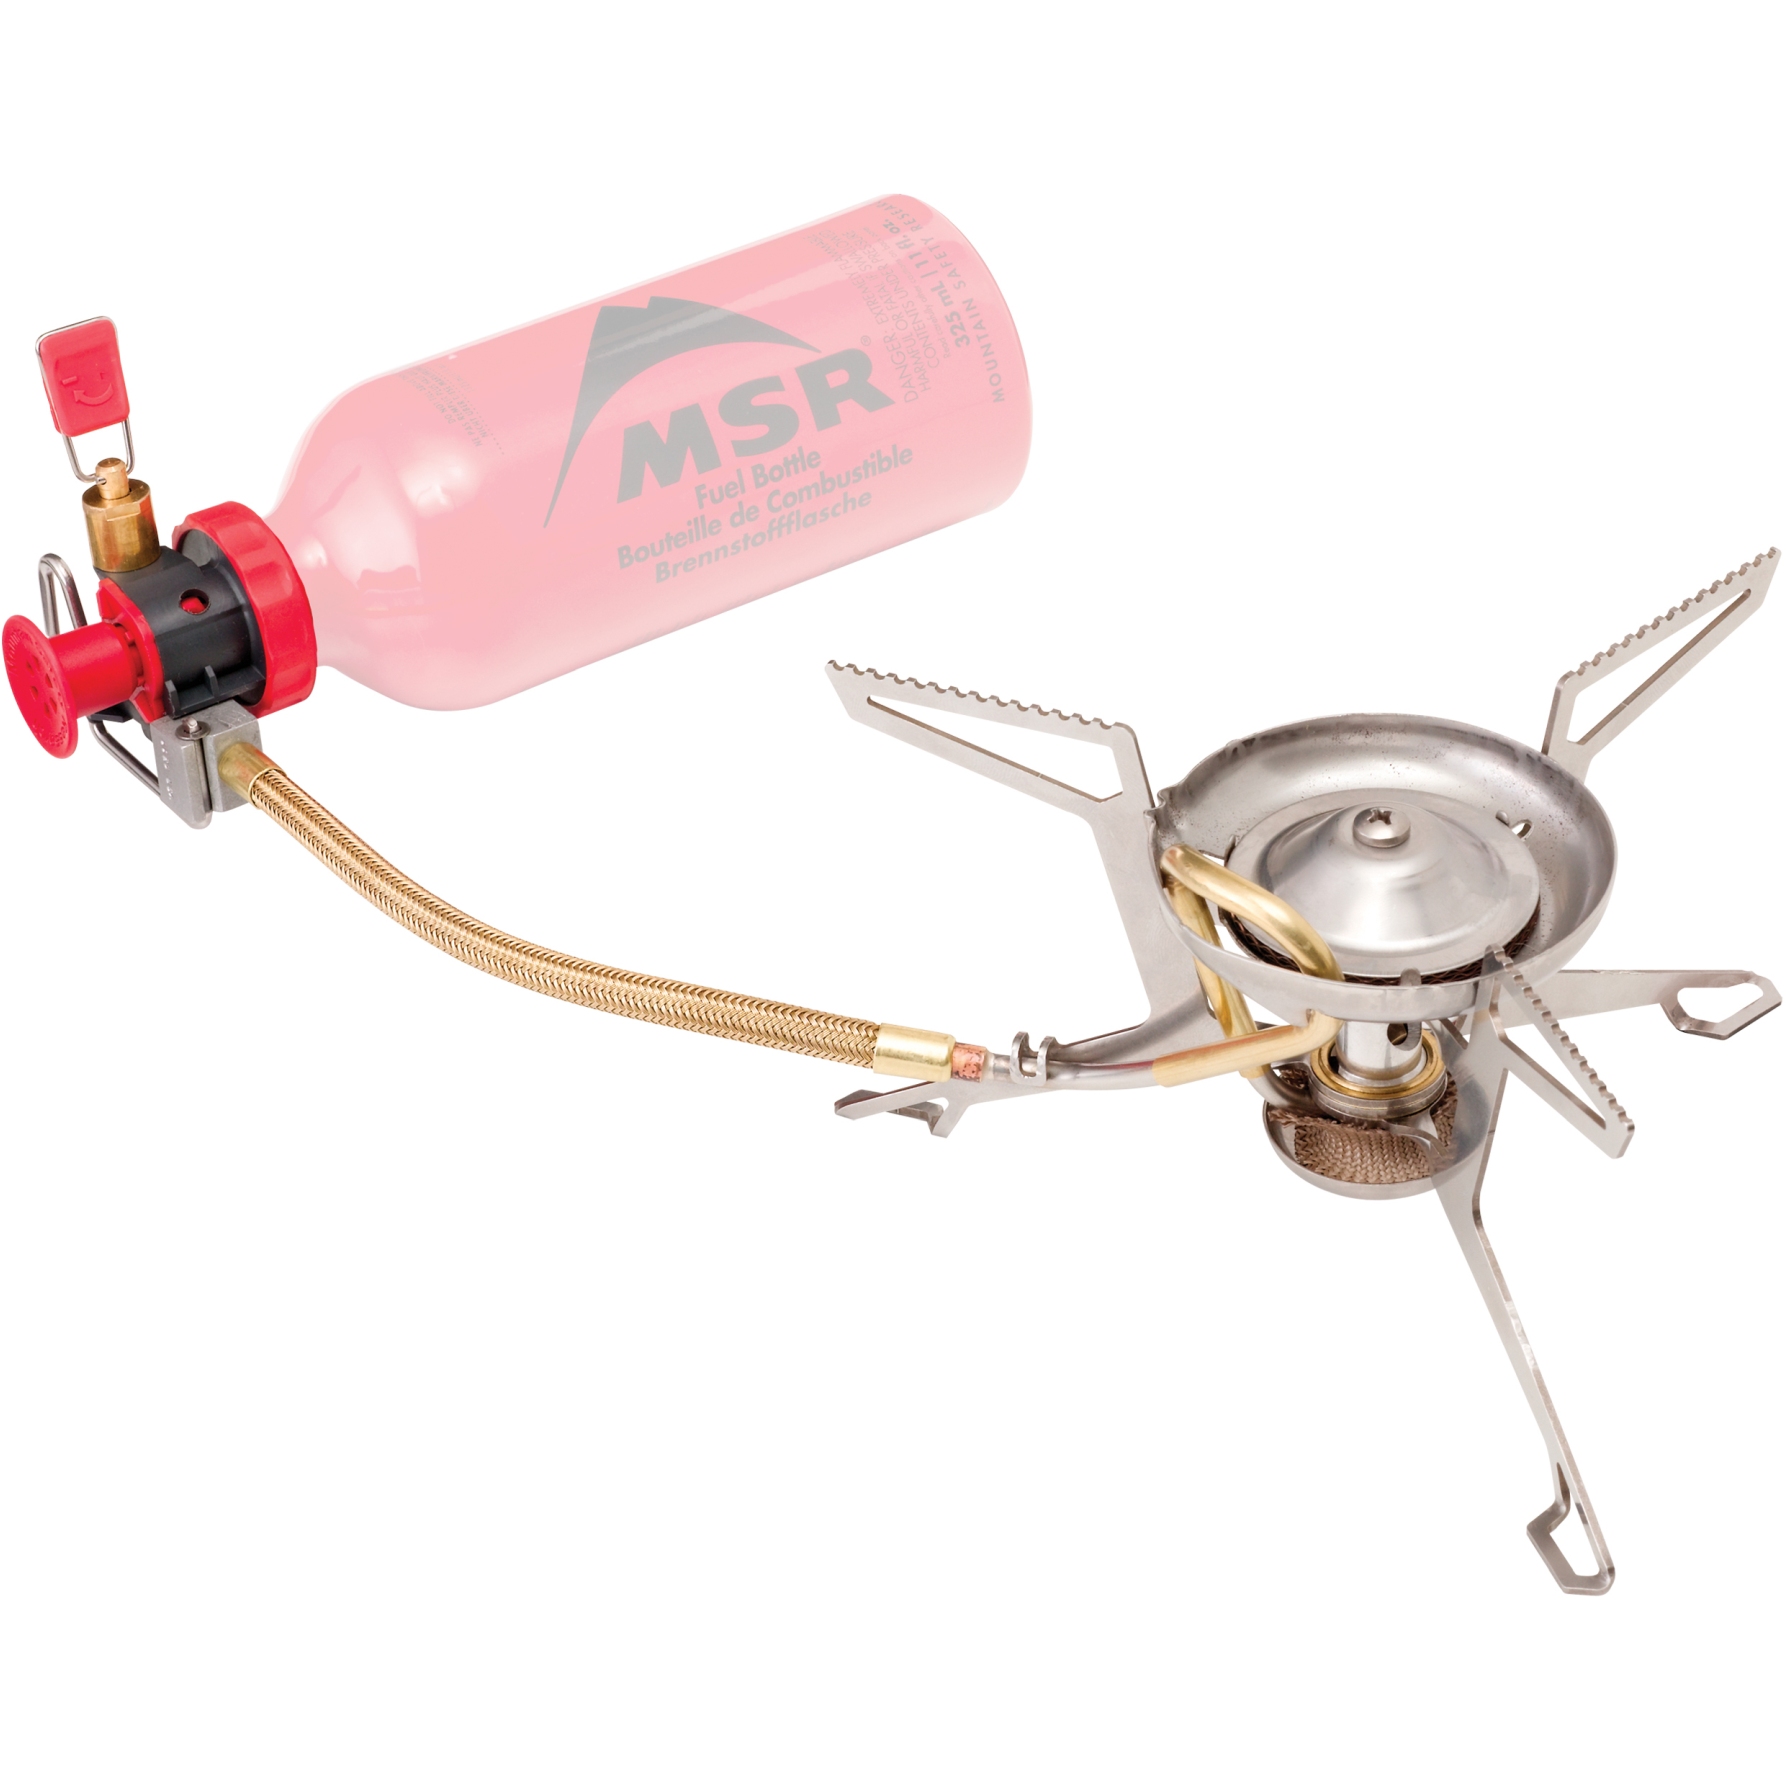 Image of MSR WhisperLite International Combo Multi Fuel Stove